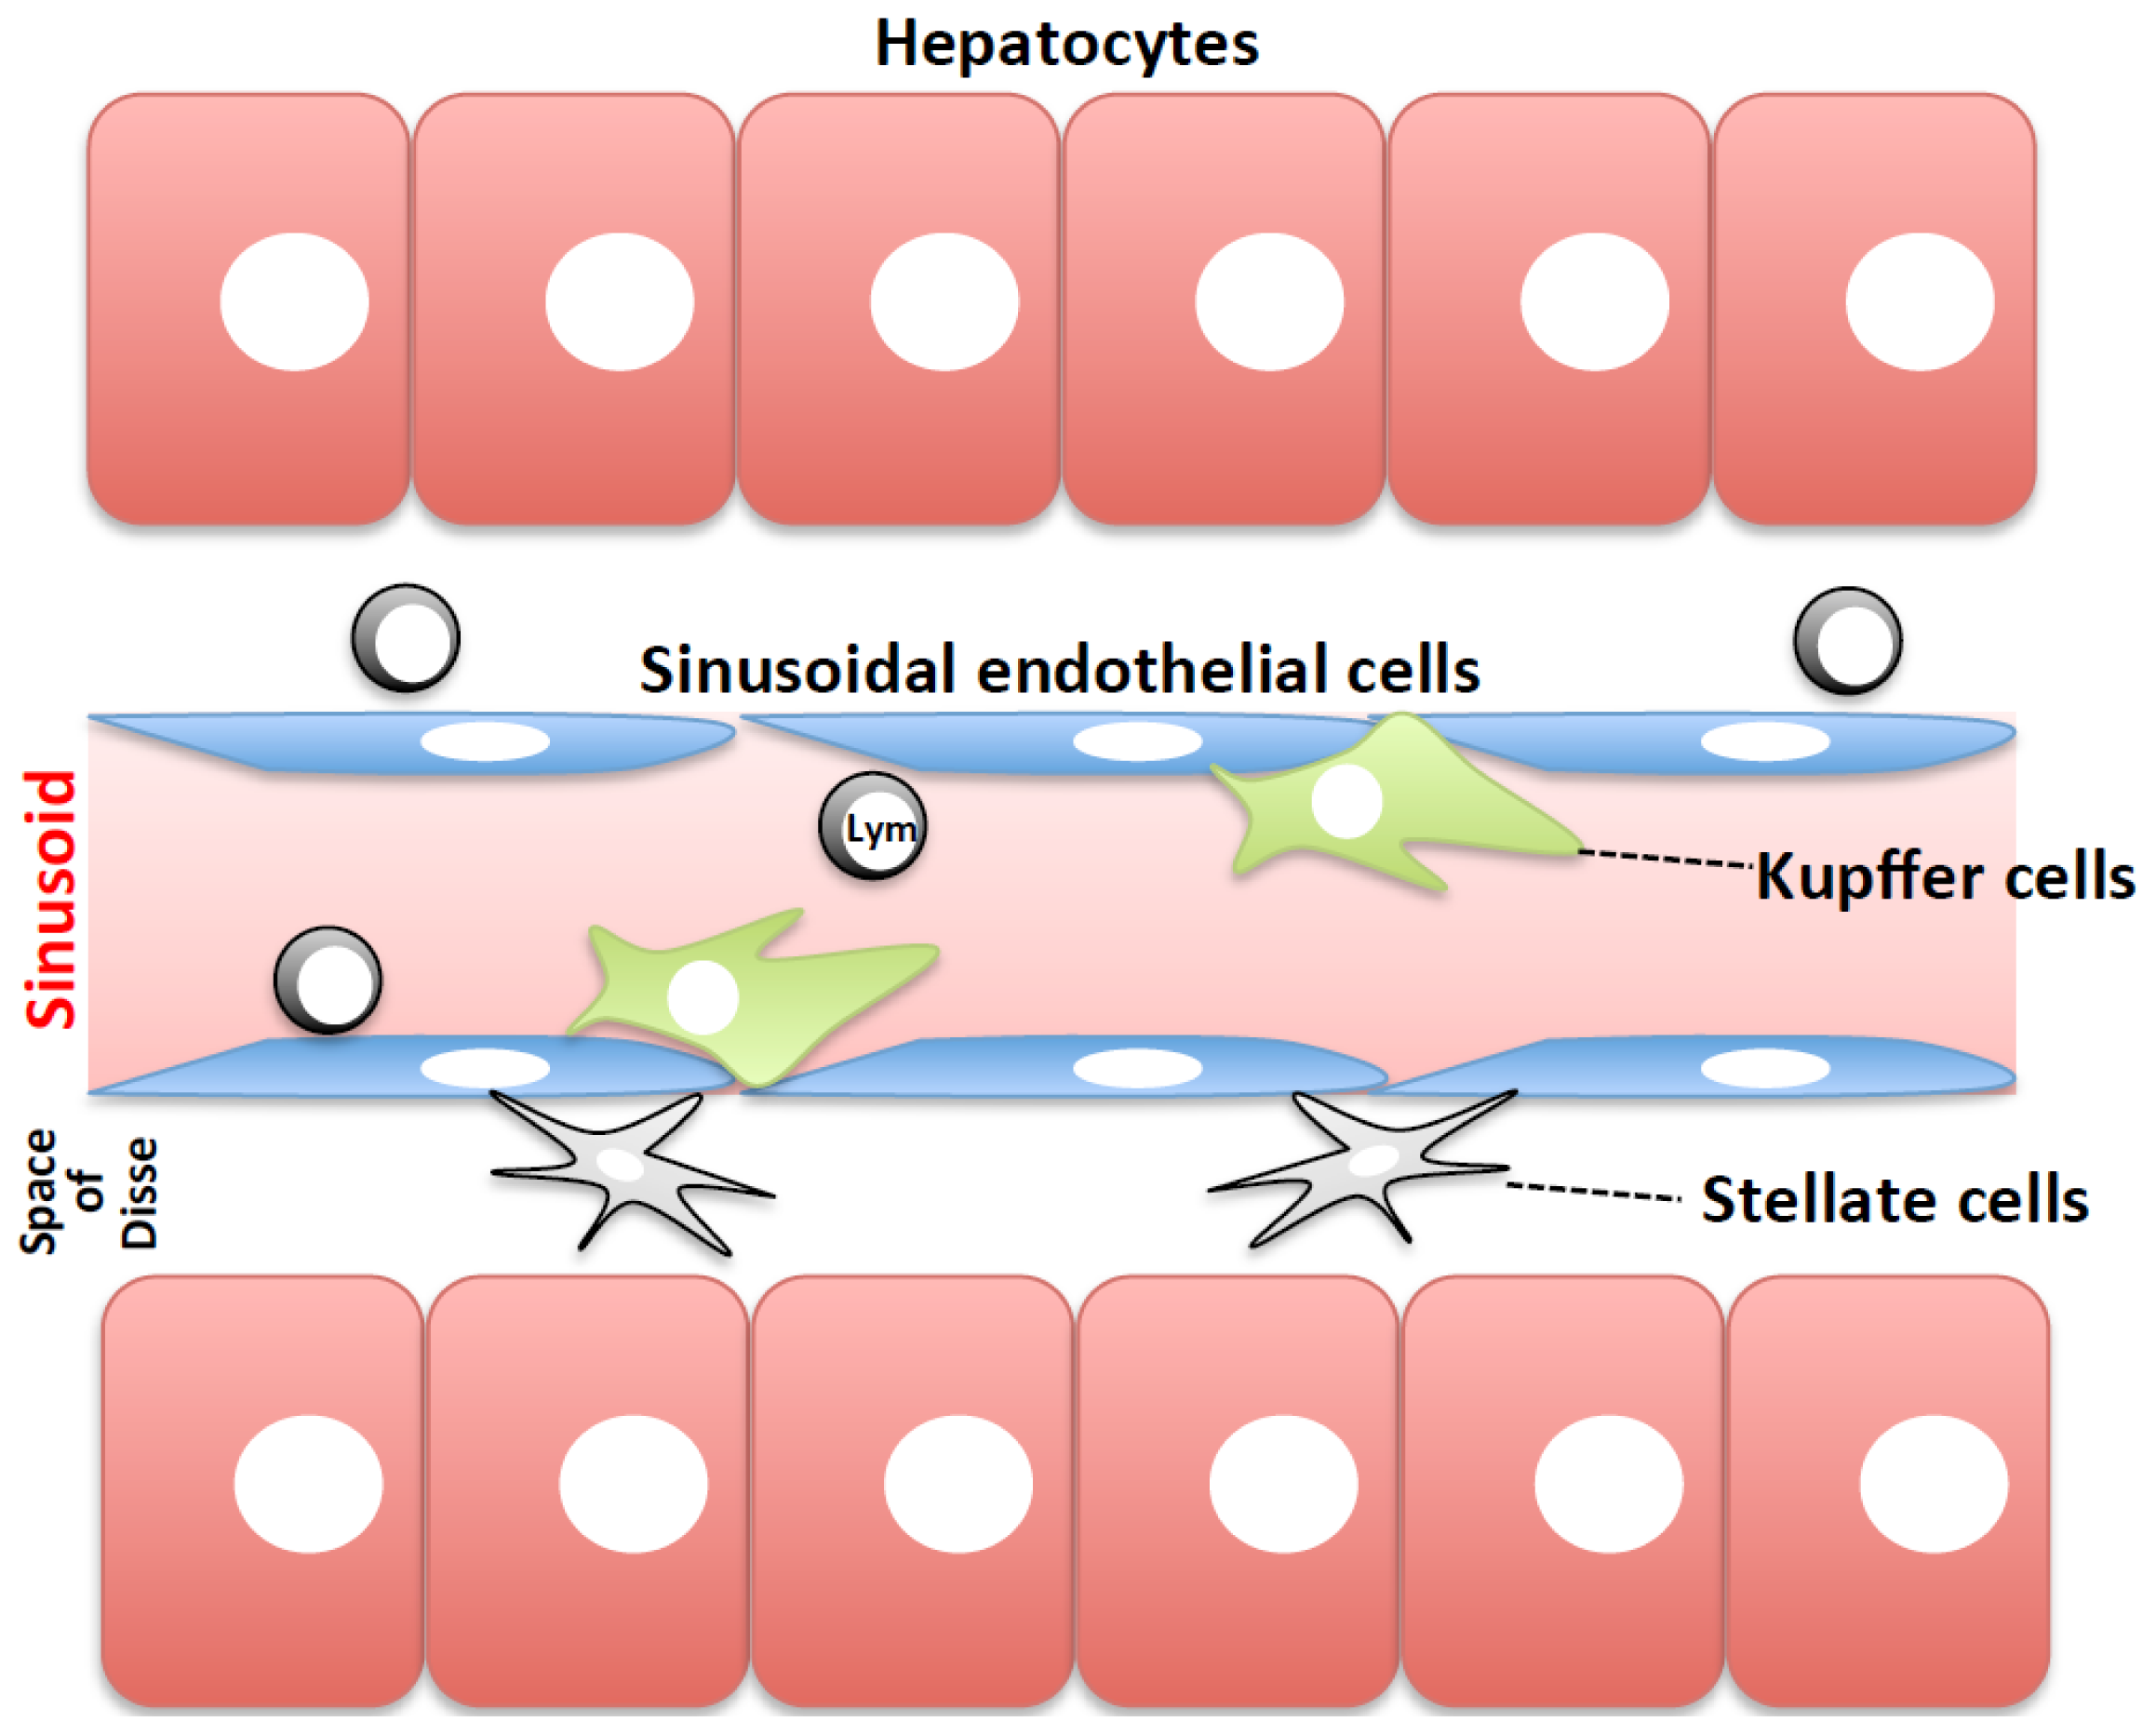 kupfer cells